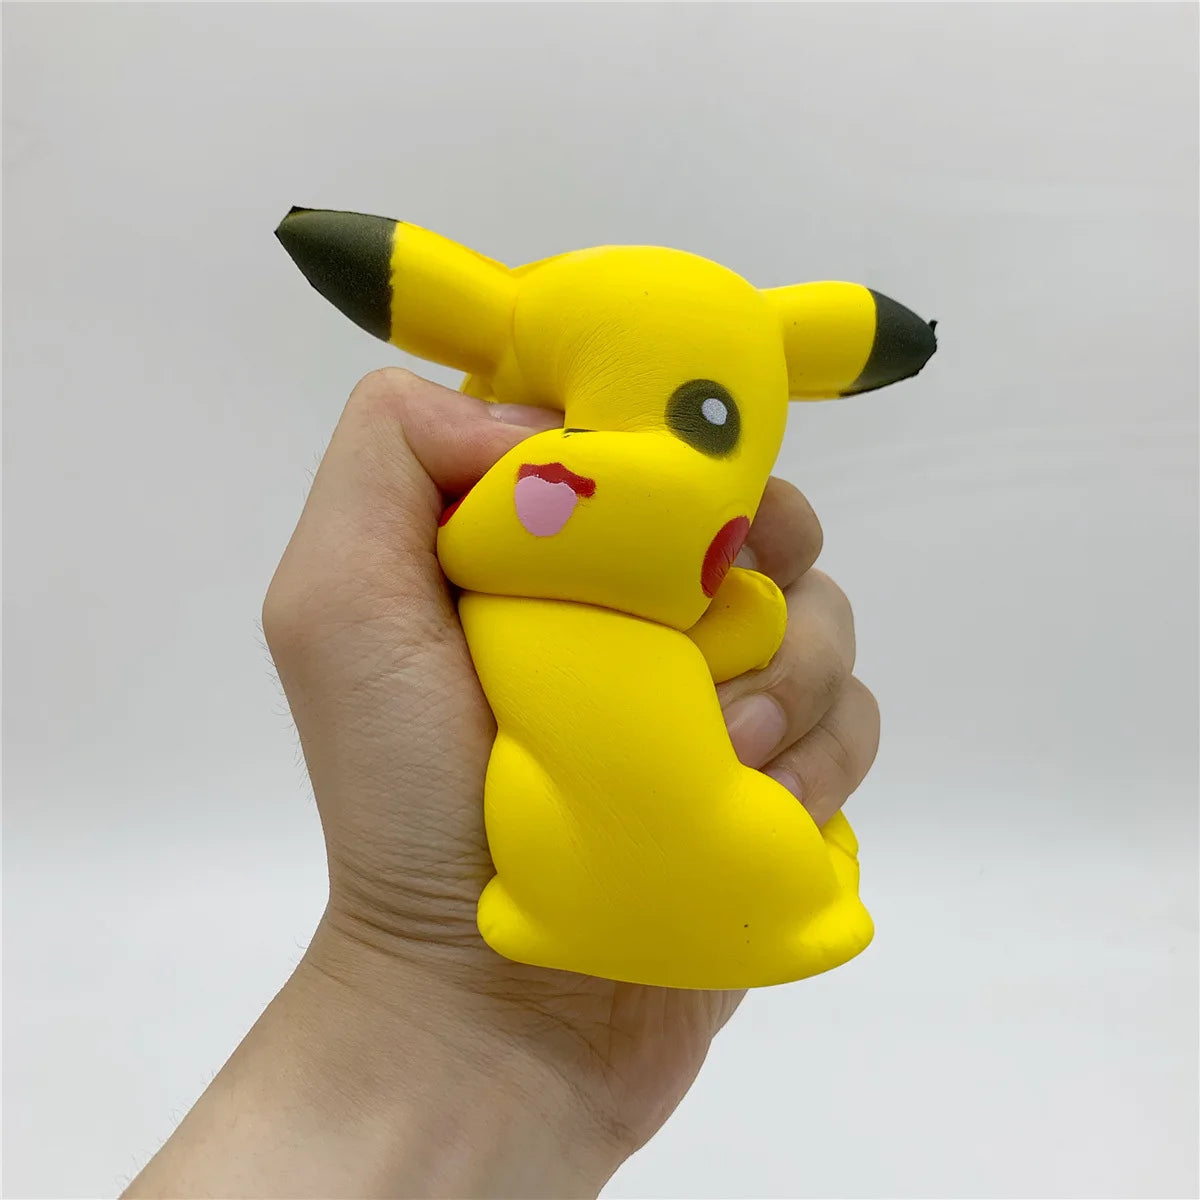 Pikachu Squishy Fidget Toy - Fun Stress Relief for Kids